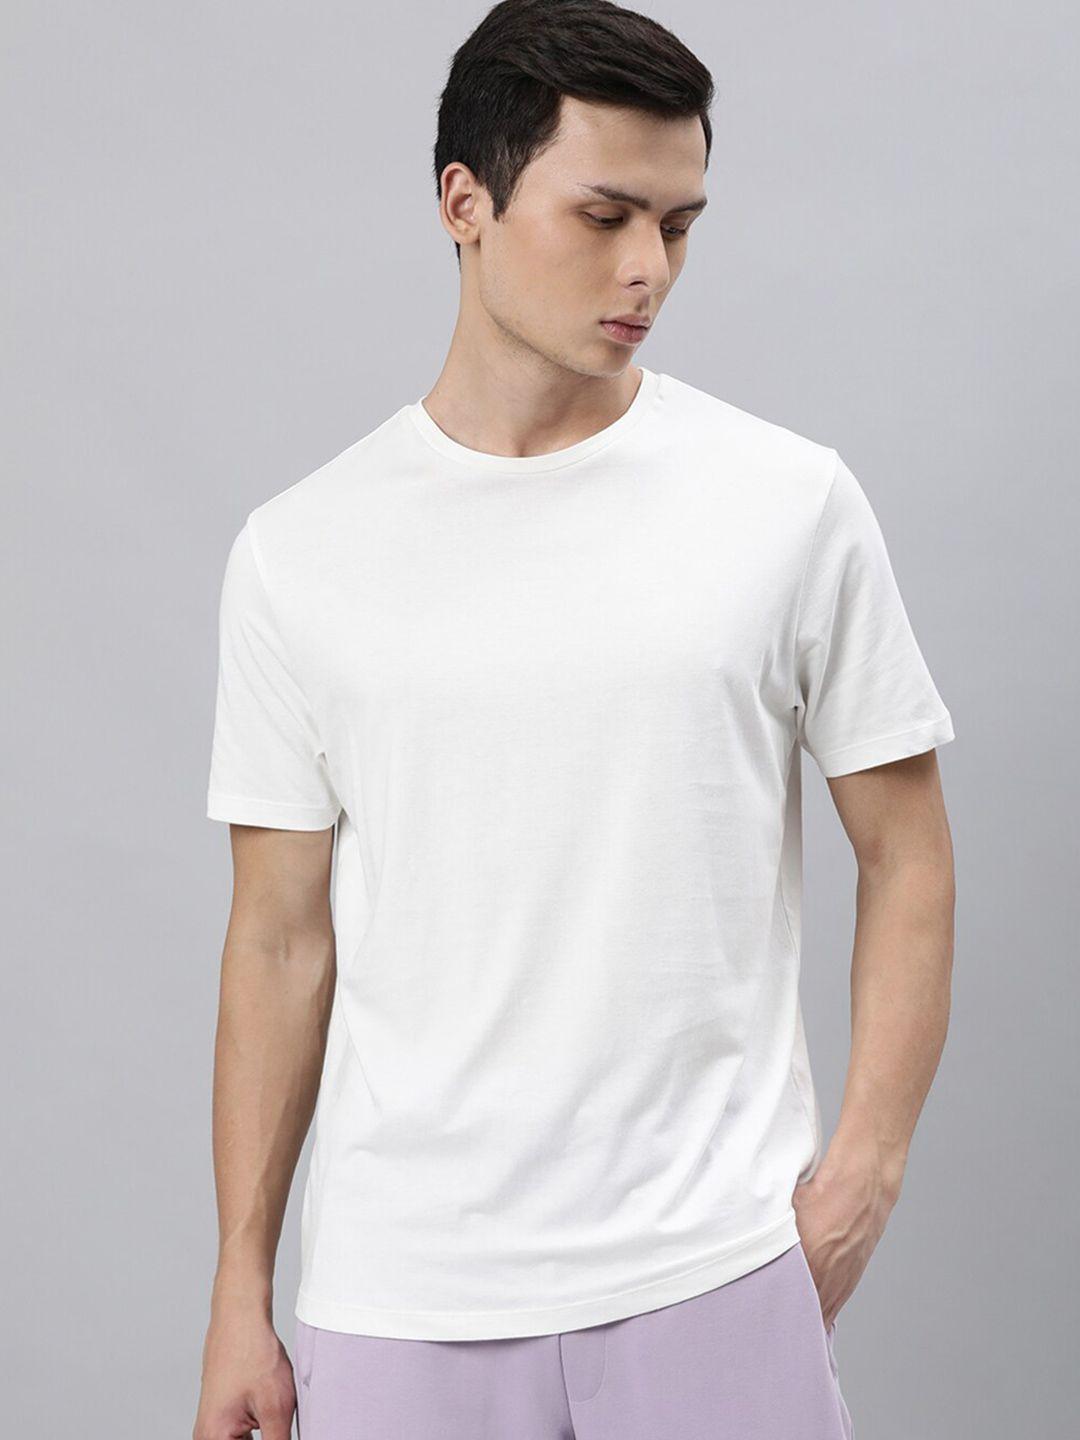 articale men off white solid  slim fit cotton t-shirt